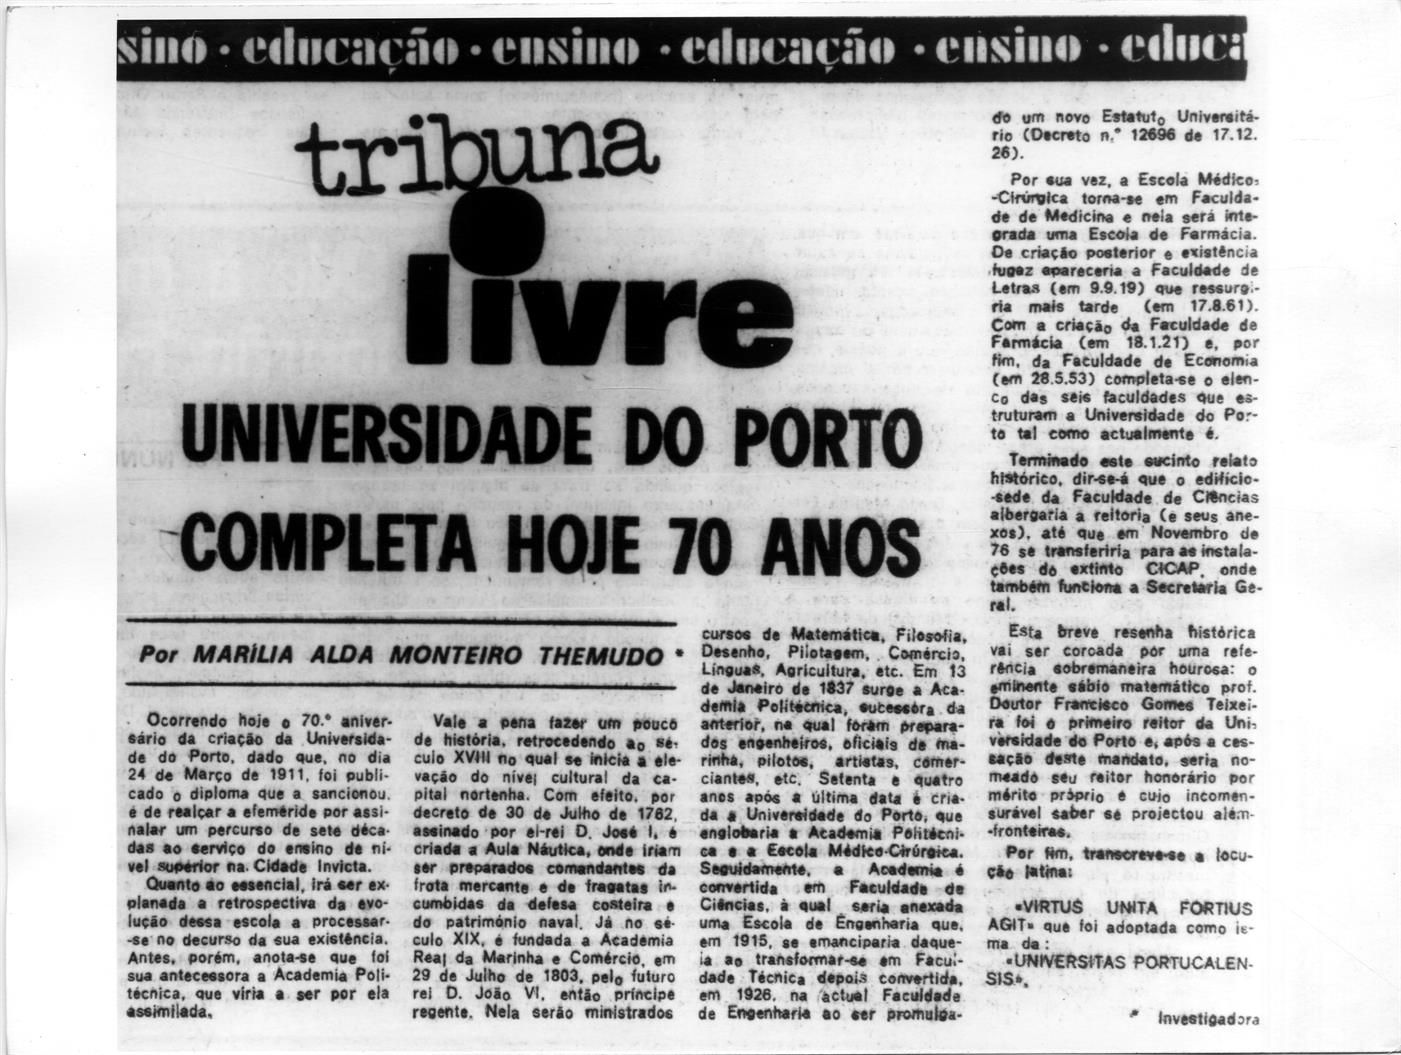 A Universidade do Porto e as suas origens : tribuna livre : Universidade do Porto completa 70 anos